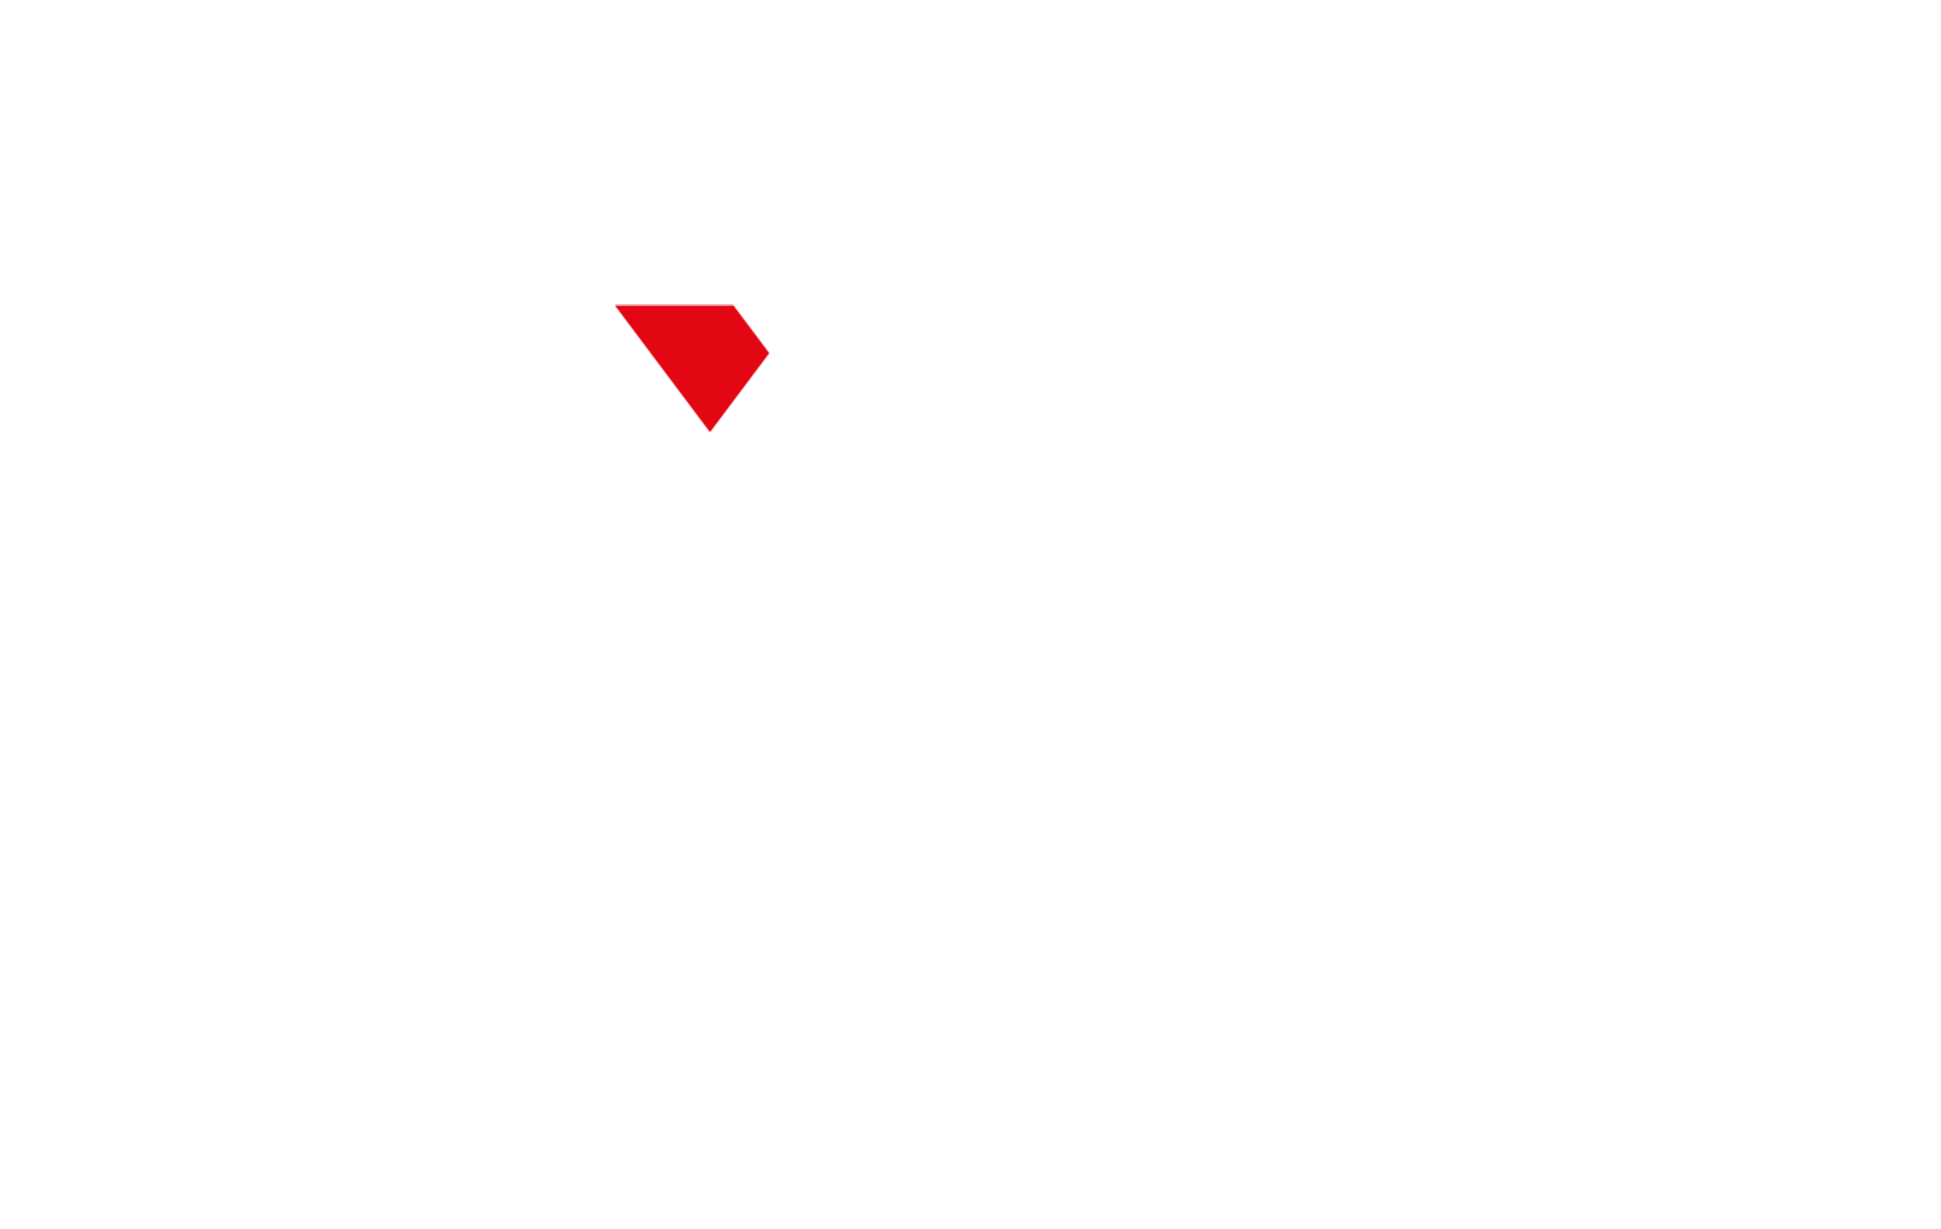 logotipo de axen broker unidad de negocio dedicada al trading y forex trading o mercado de divisas